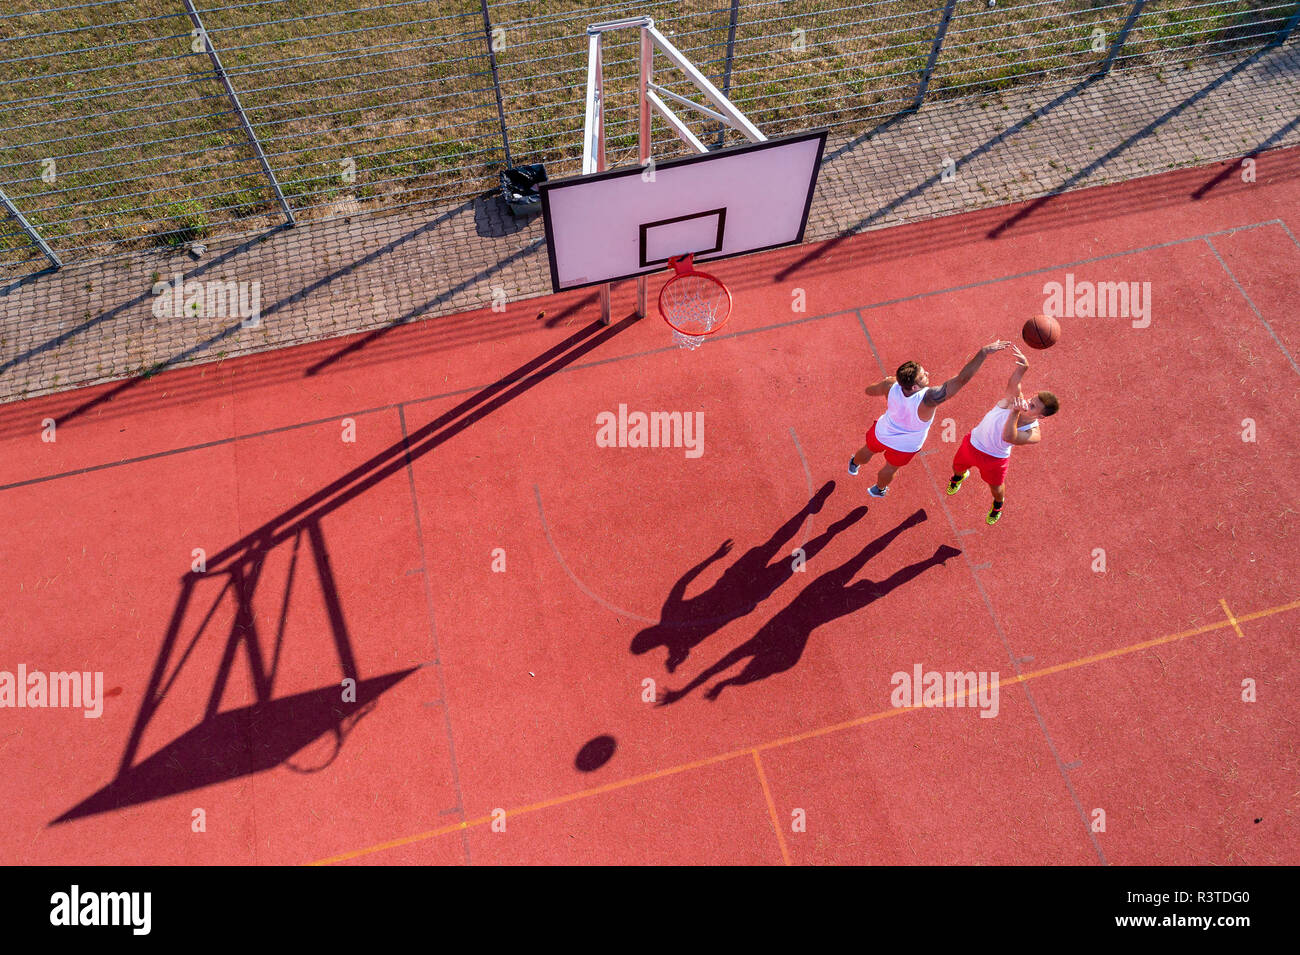 Deux jeunes hommes jouant au basket-ball sur une cour extérieure, vue aérienne Banque D'Images